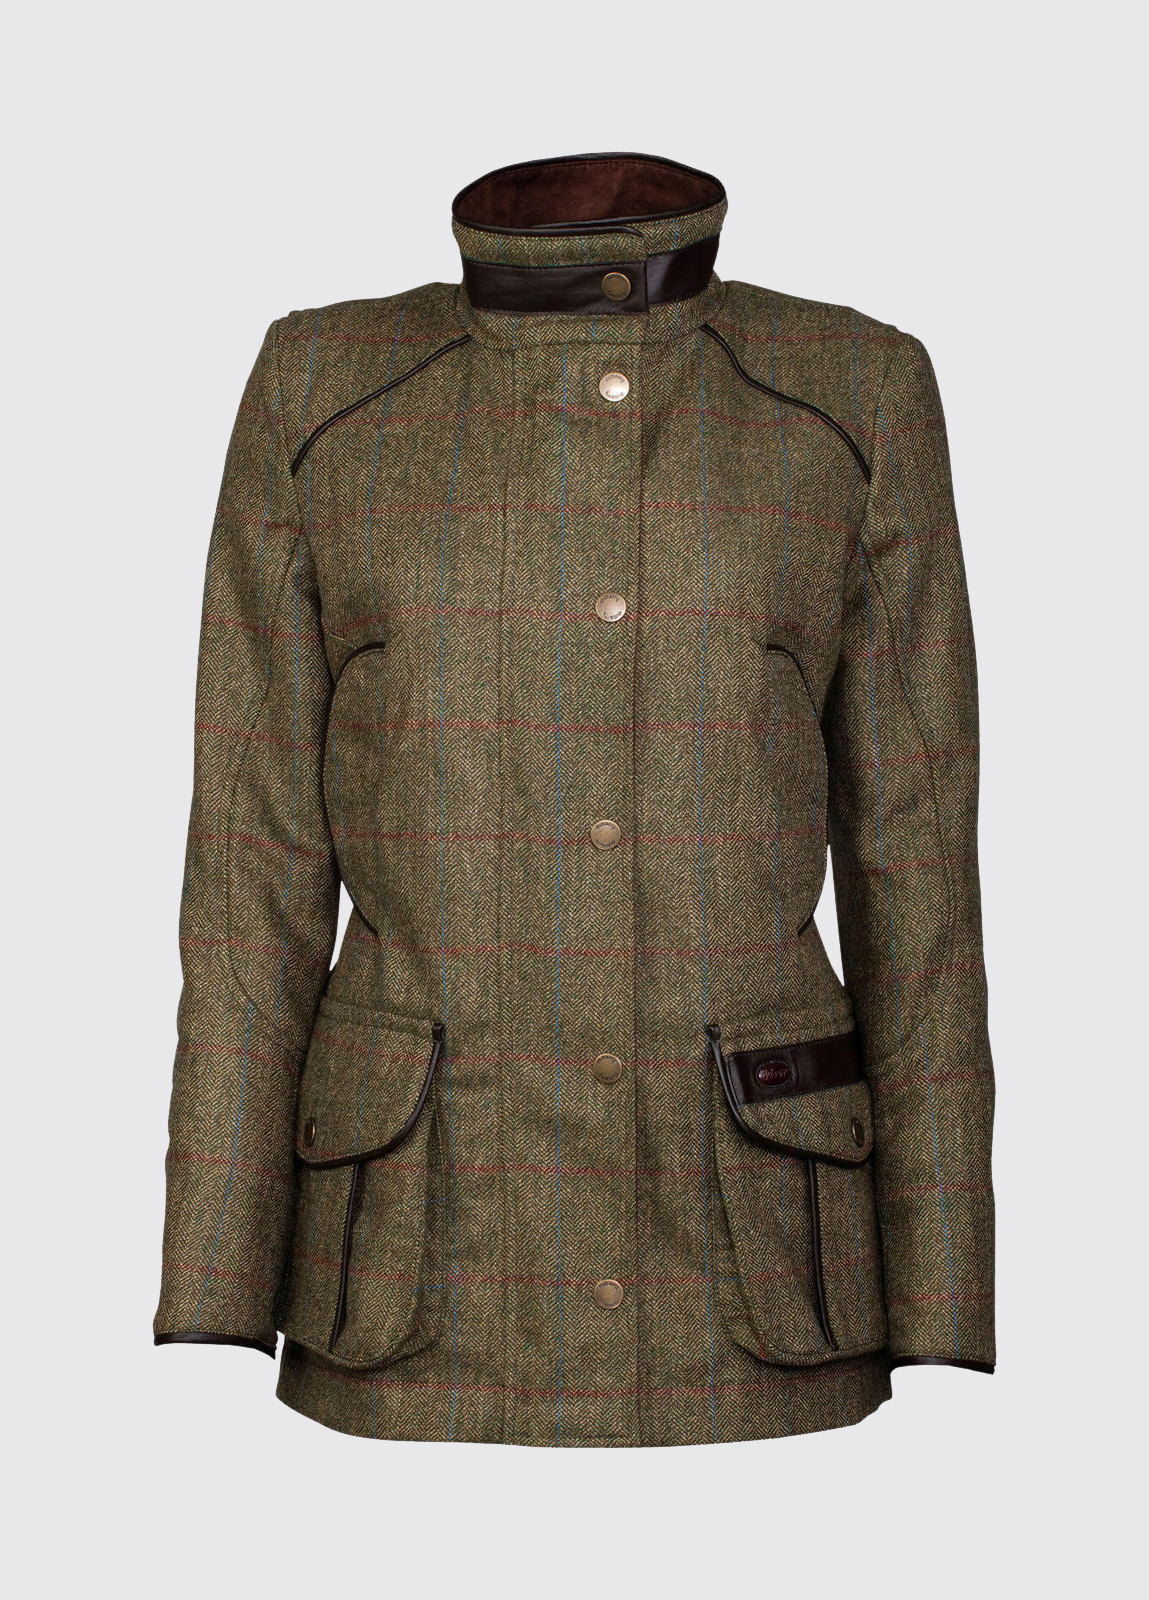 Marlfield Tweed Jacket - Moss